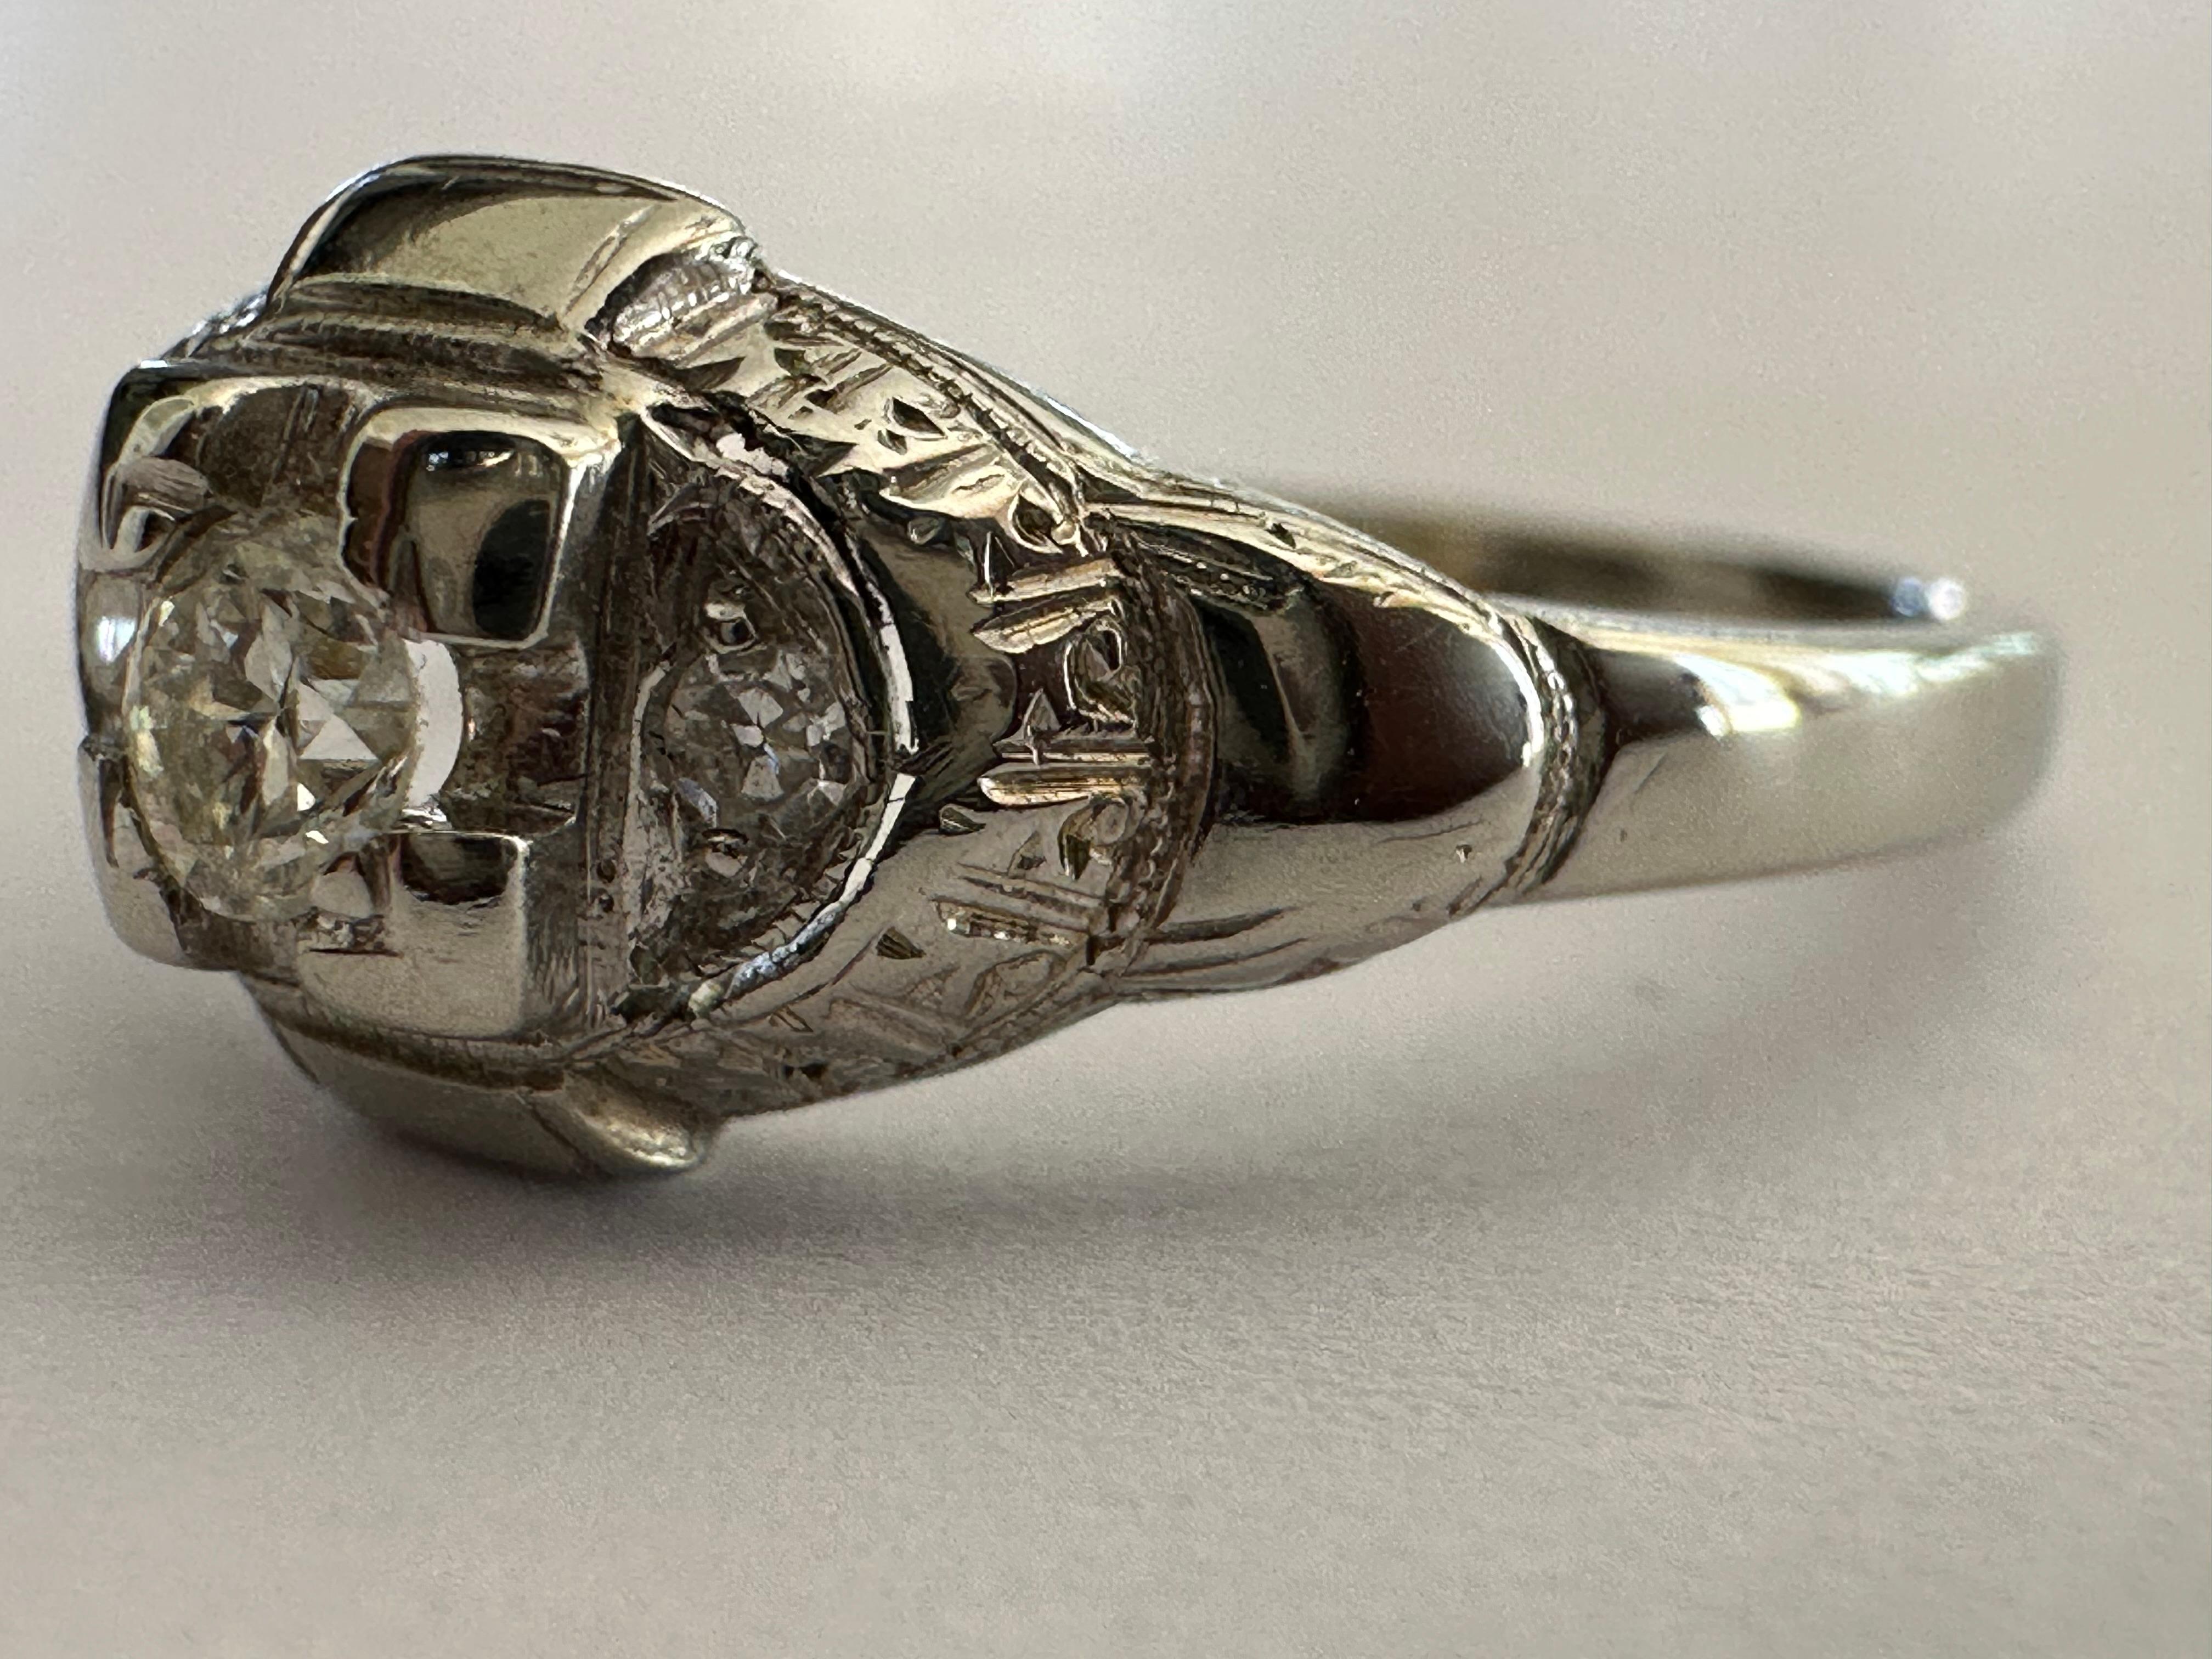 Une pierre centrale en diamant de taille européenne ancienne mesurant environ 0,10 carat, de couleur I et de pureté VS, brille dans une monture carrée rehaussée de deux diamants de taille unique et d'une délicate gravure à la main. Serti en or blanc